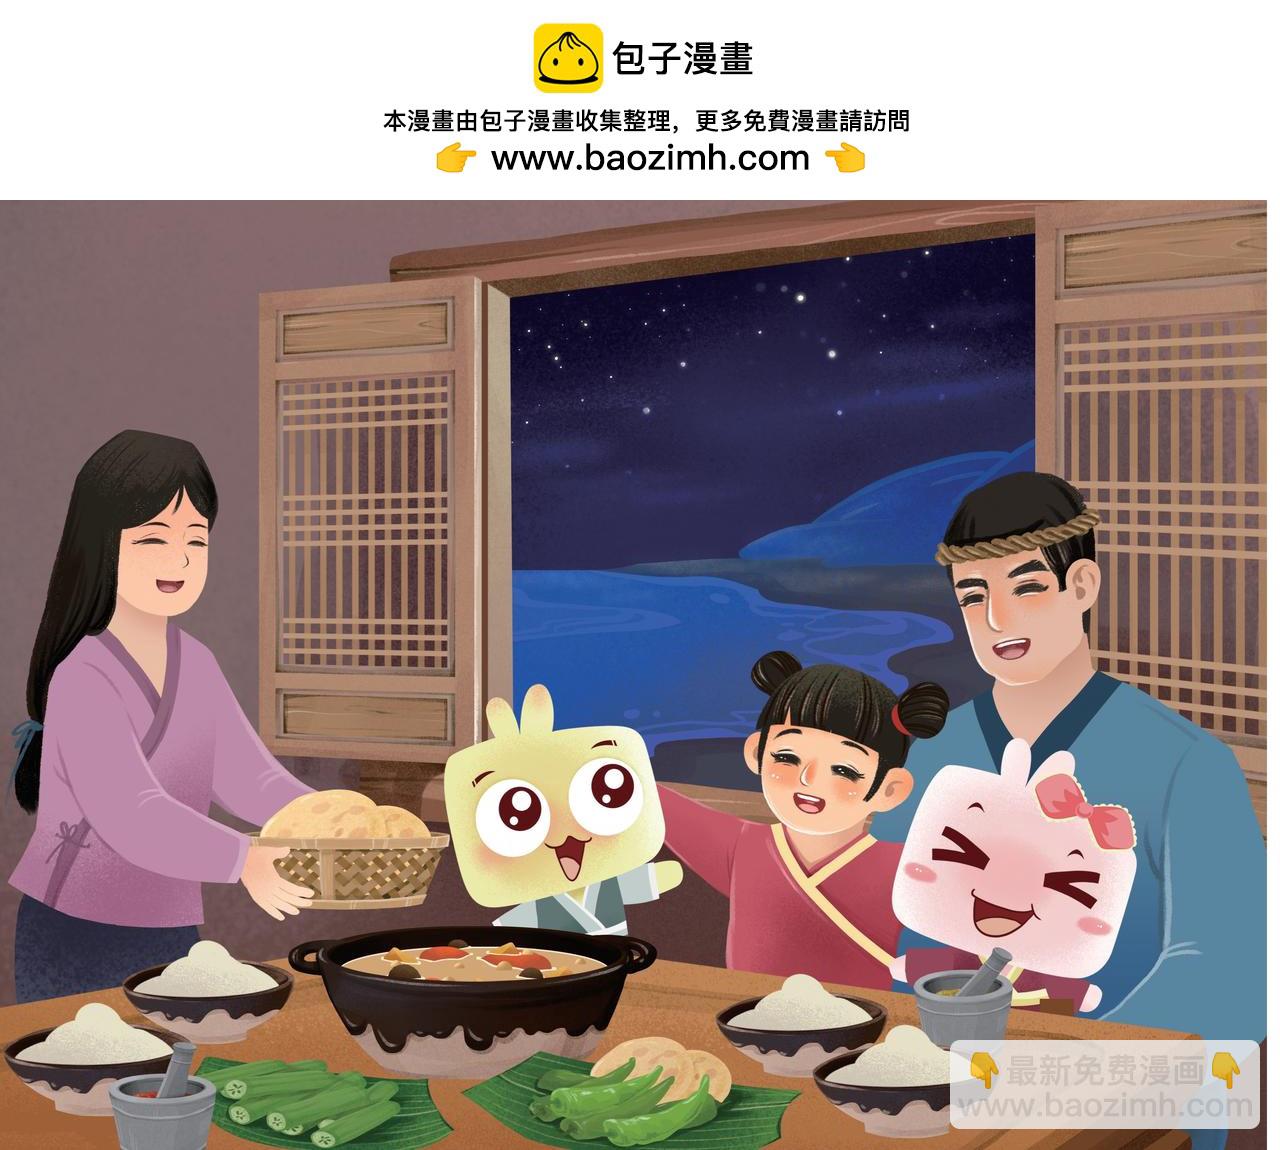 JONJON囧囧海絲奇遊記 - 娘惹菜系——歷史記憶的鄉愁 - 4